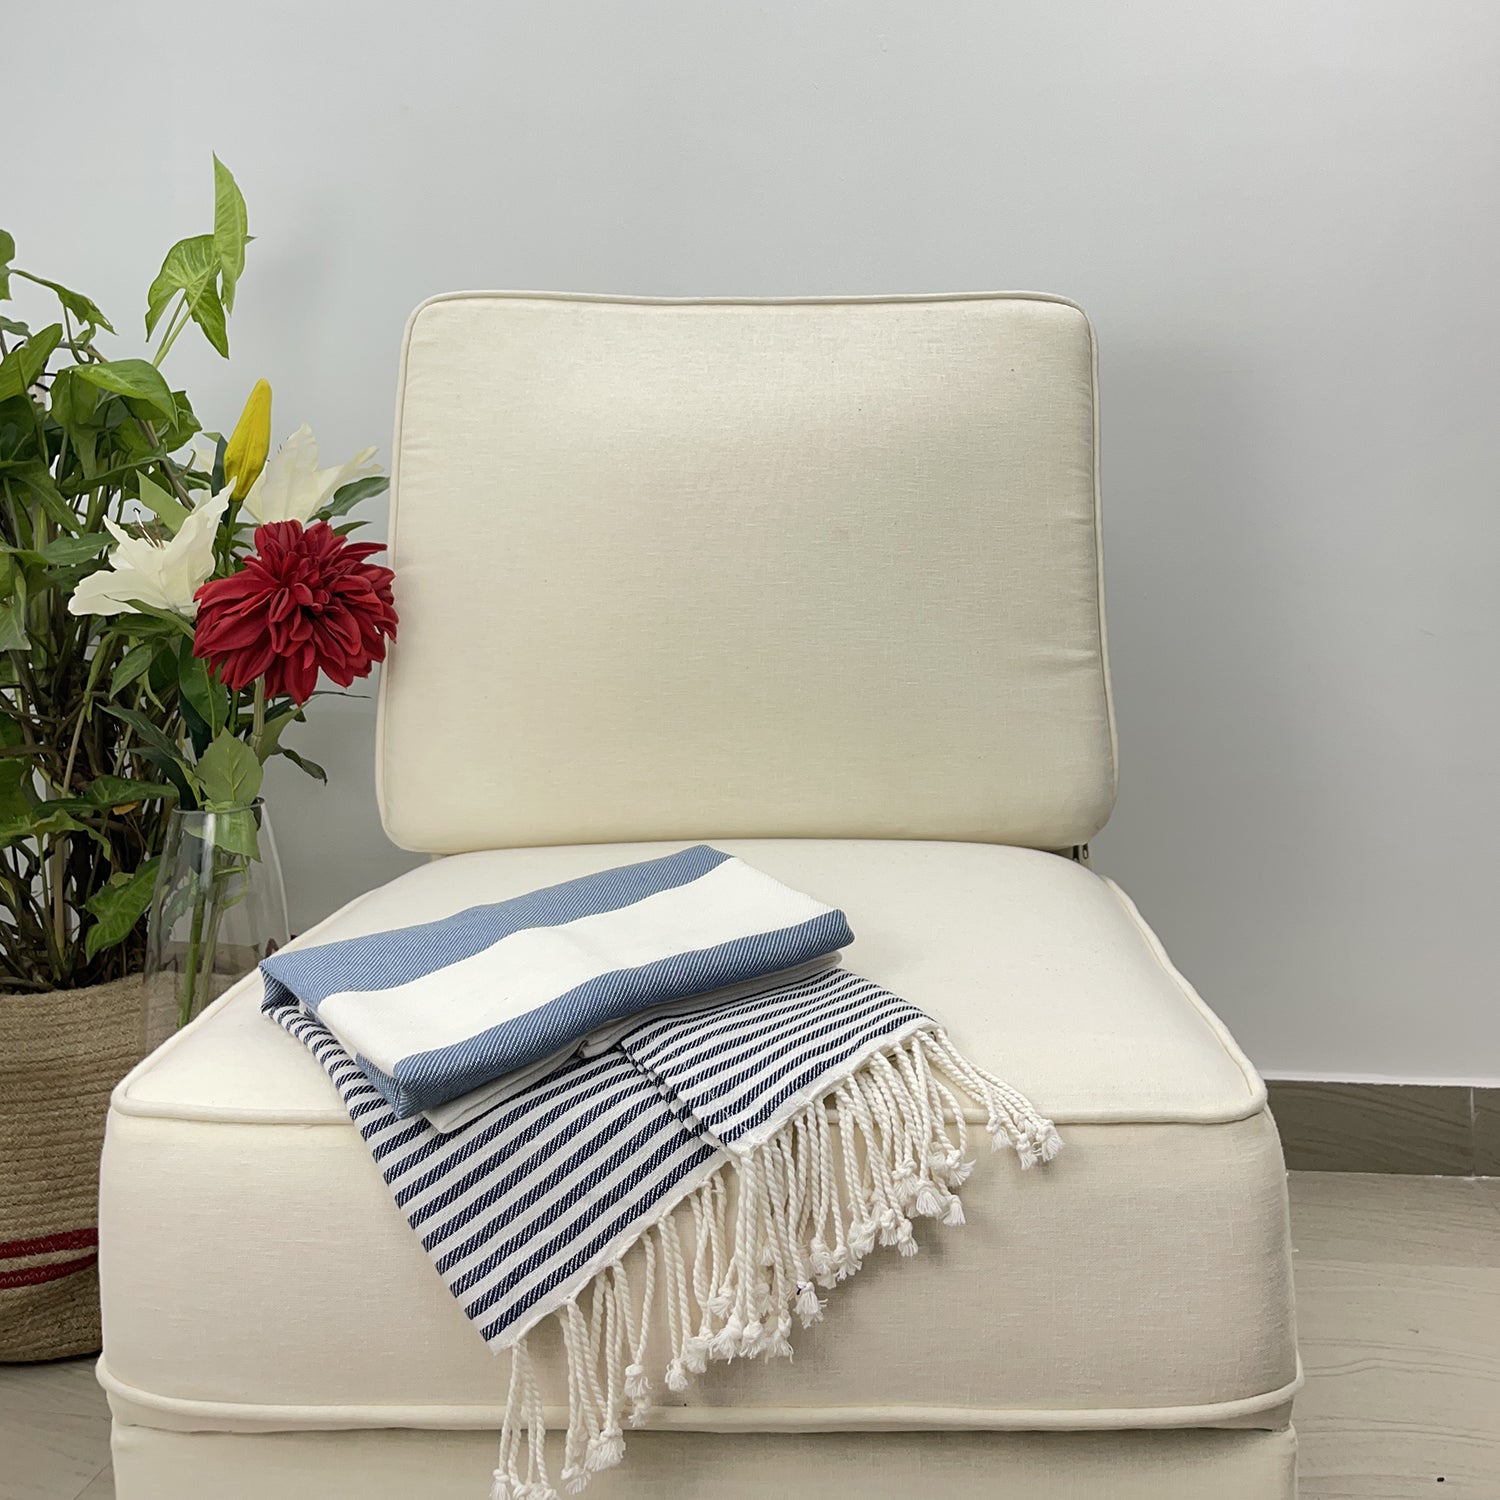 Avocado Linens Cotton Blend Sofa Throws - Blue & White Nautical Stripes